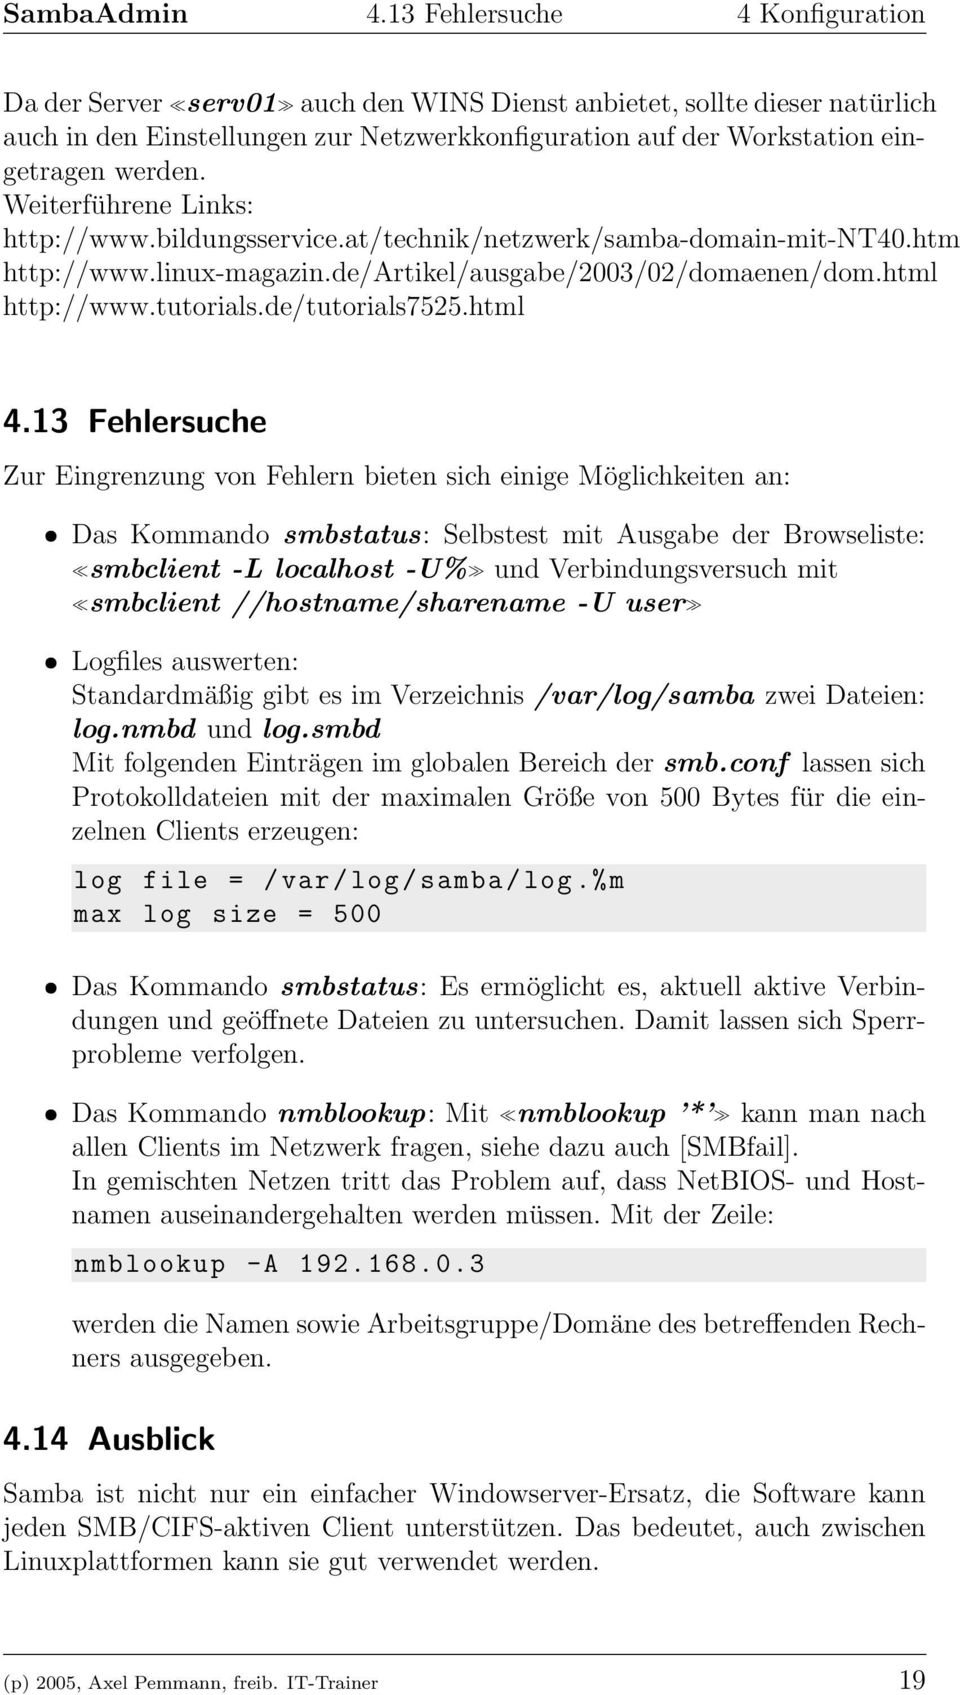 Weiterführene Links: http://www.bildungsservice.at/technik/netzwerk/samba-domain-mit-nt40.htm http://www.linux-magazin.de/artikel/ausgabe/2003/02/domaenen/dom.html http://www.tutorials.